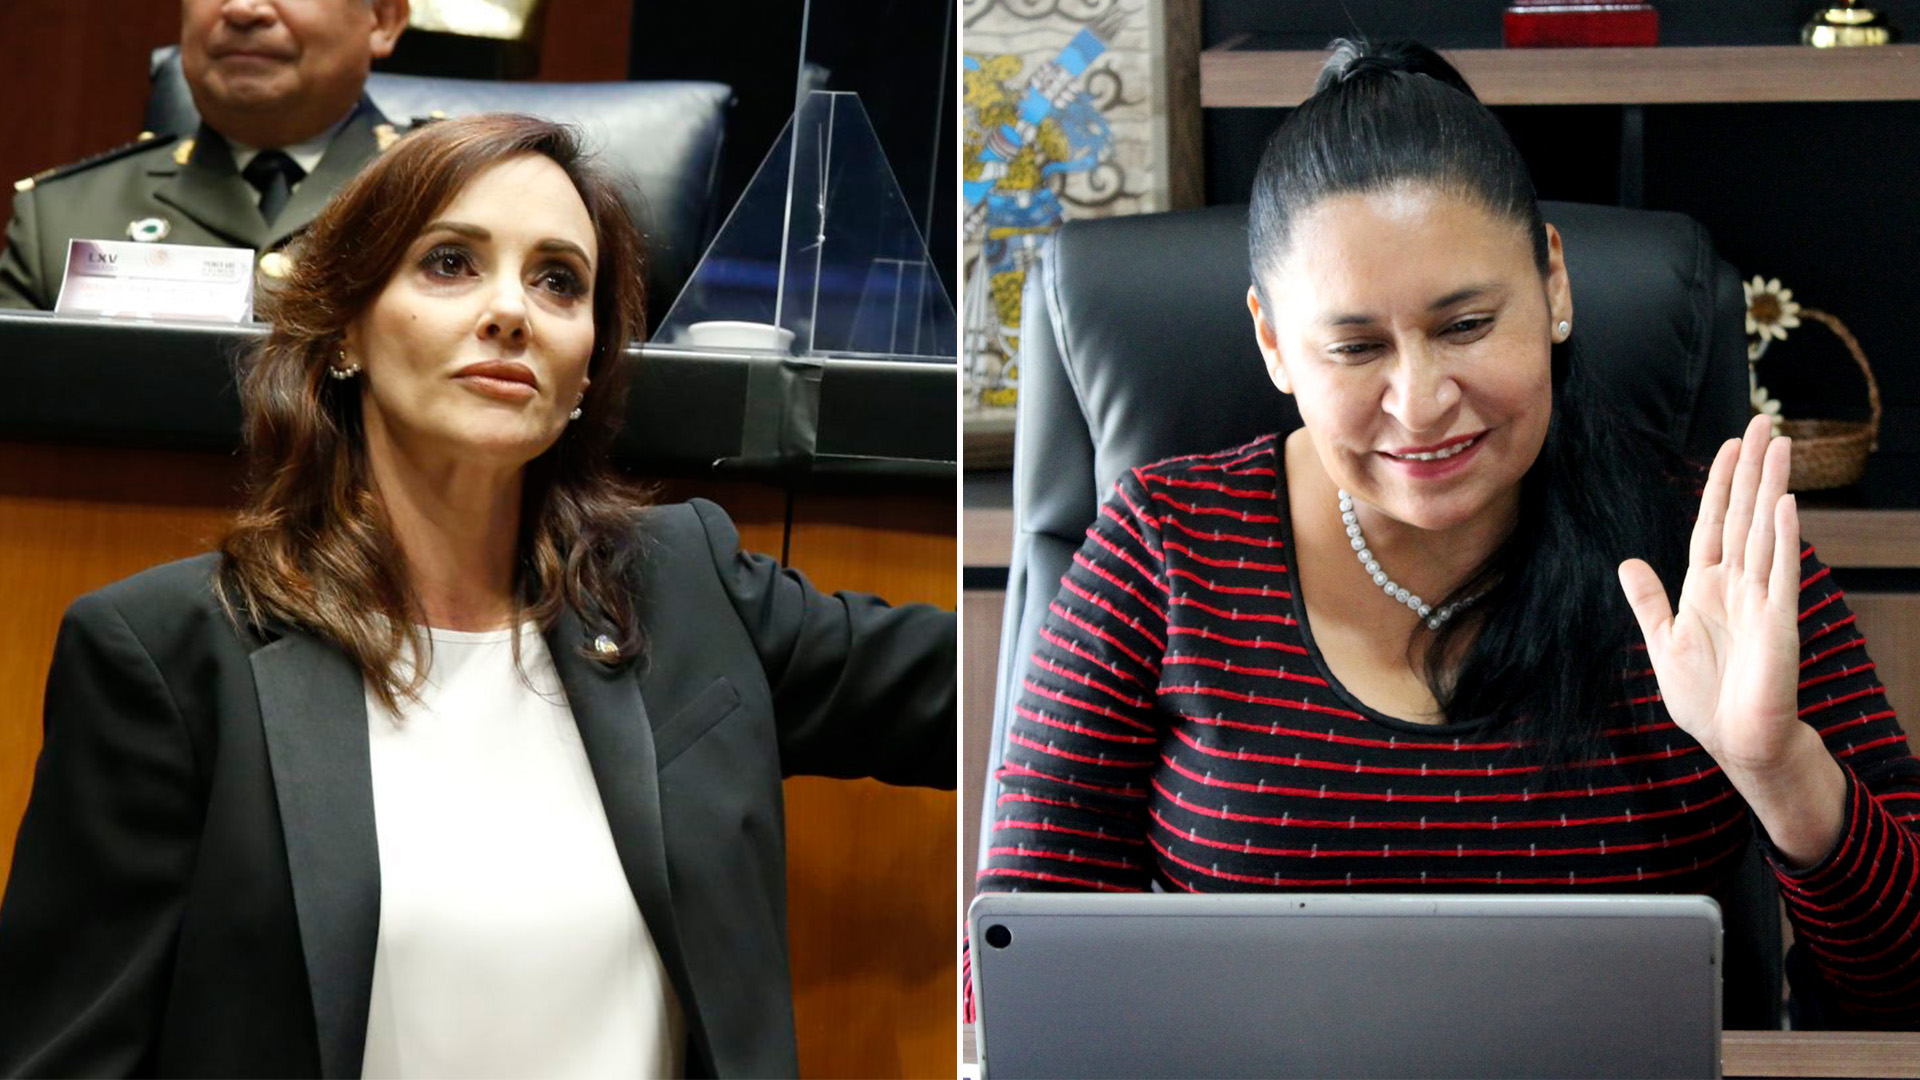 Lilly Téllez criticó a Ana Lilia Rivera, próxima vicepresidenta del Senado:  “Servilismo e ignorancia” - Infobae